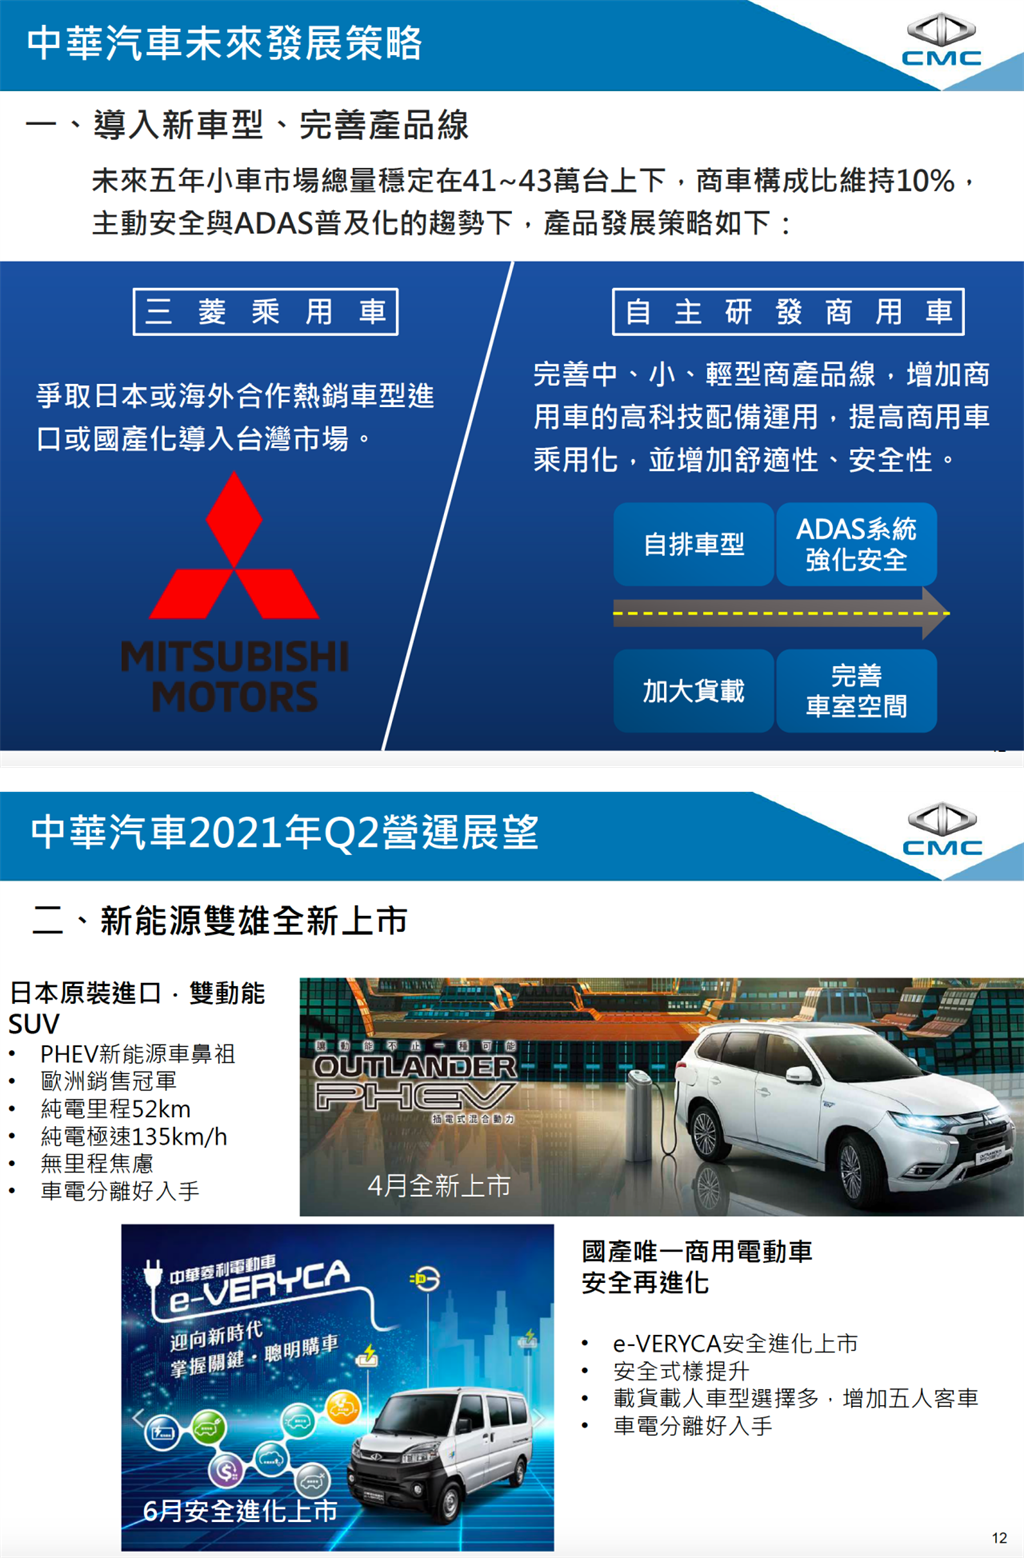 新款純電 e-VERYCA 客車 6 月販售，中華汽車未來將佈局「電動化」產品線
